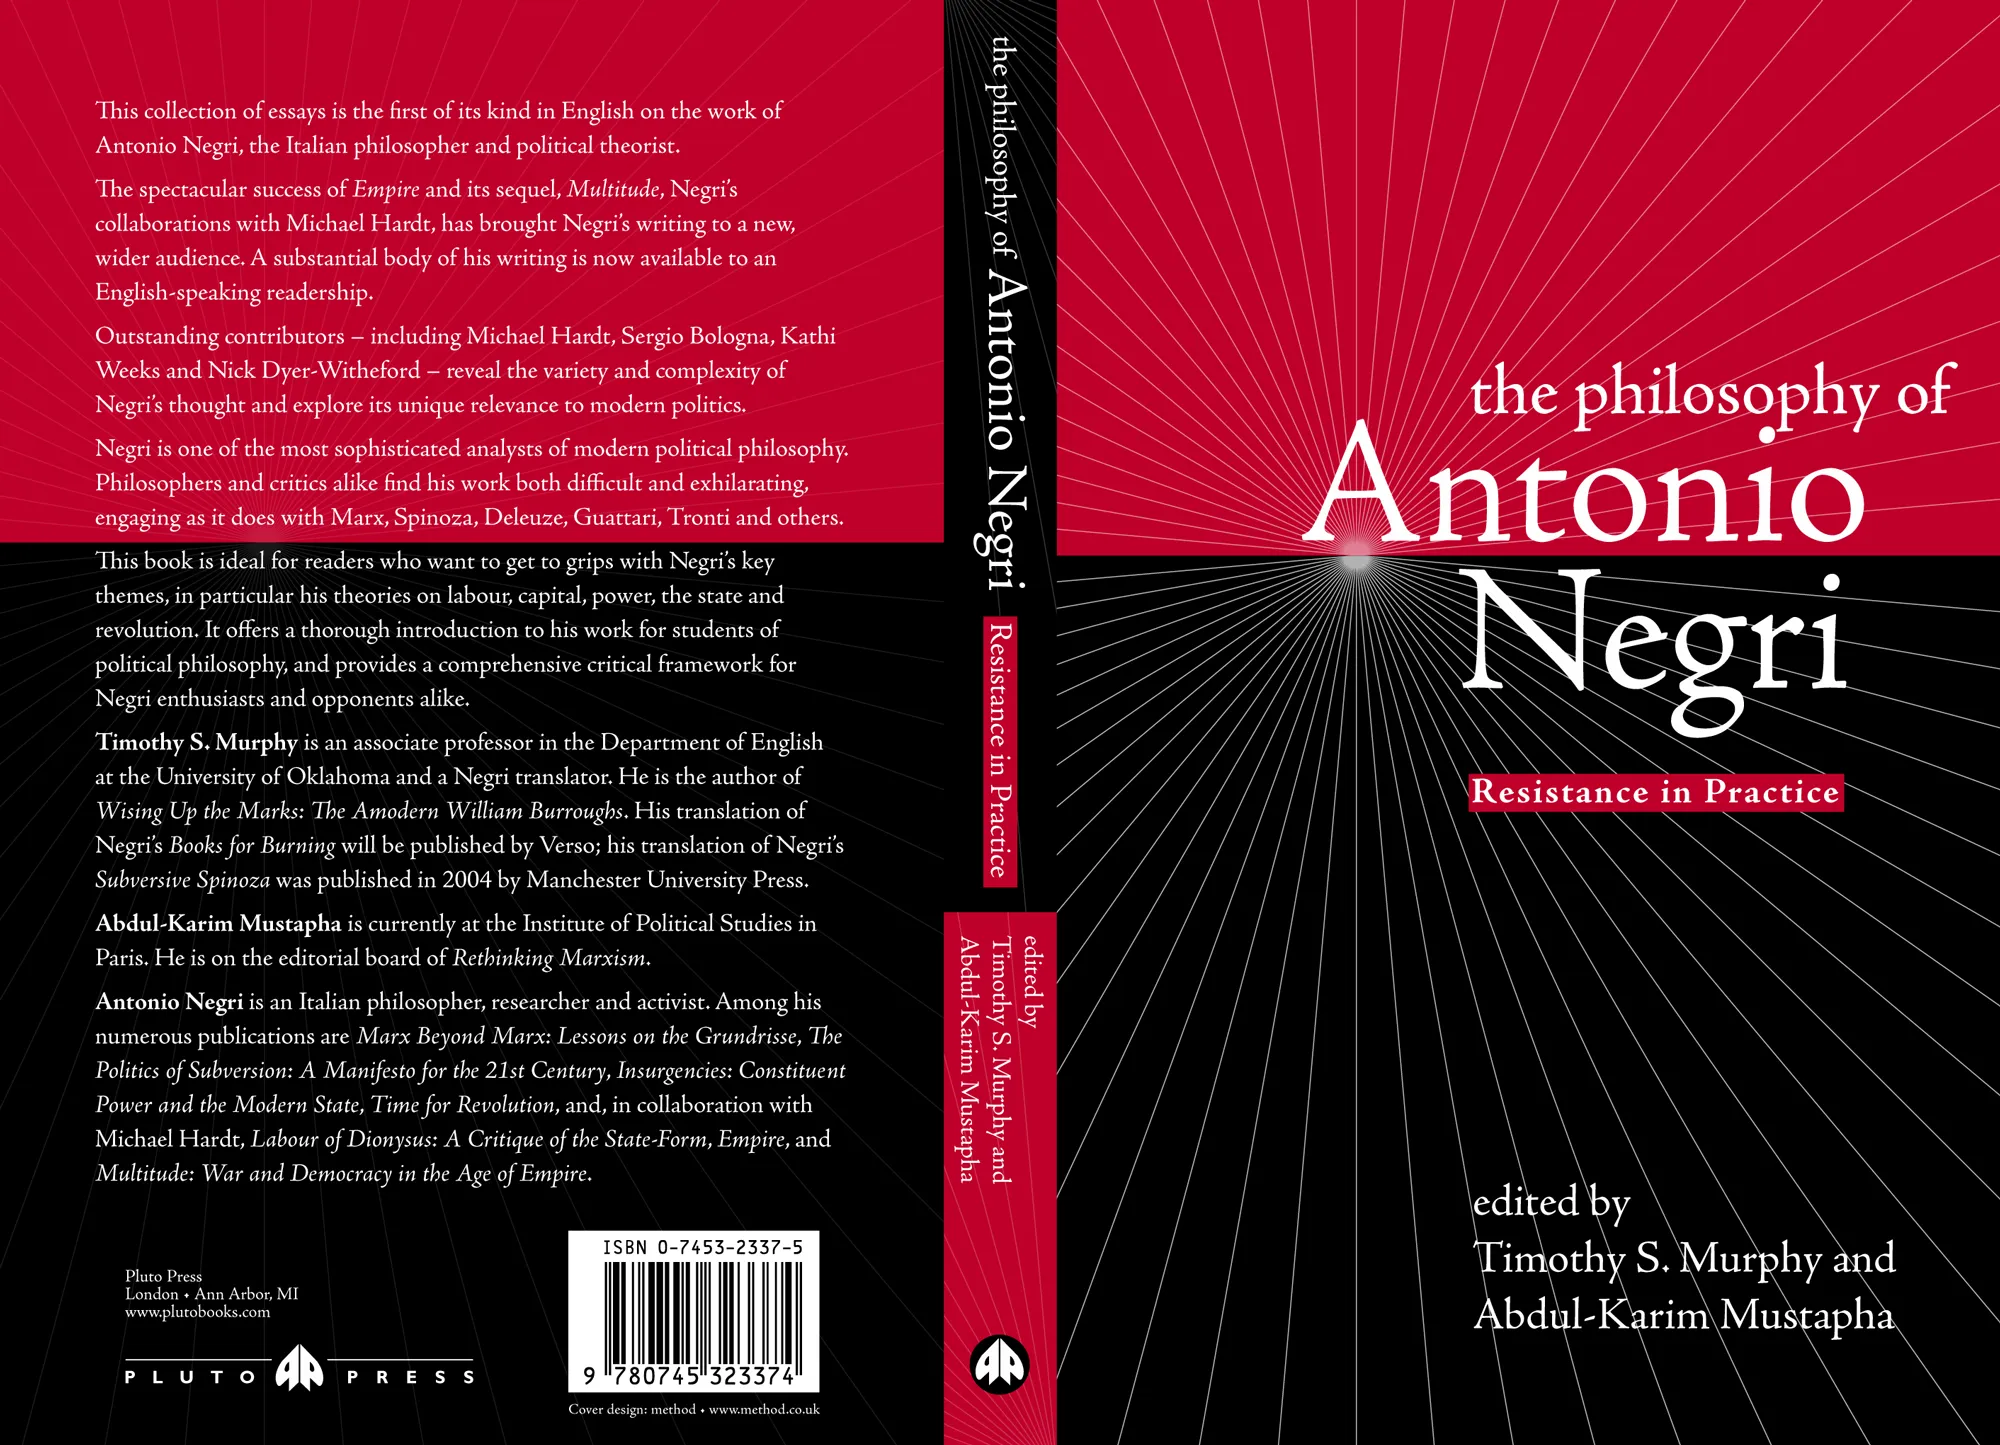 The Philosophy of Antoinio Negri